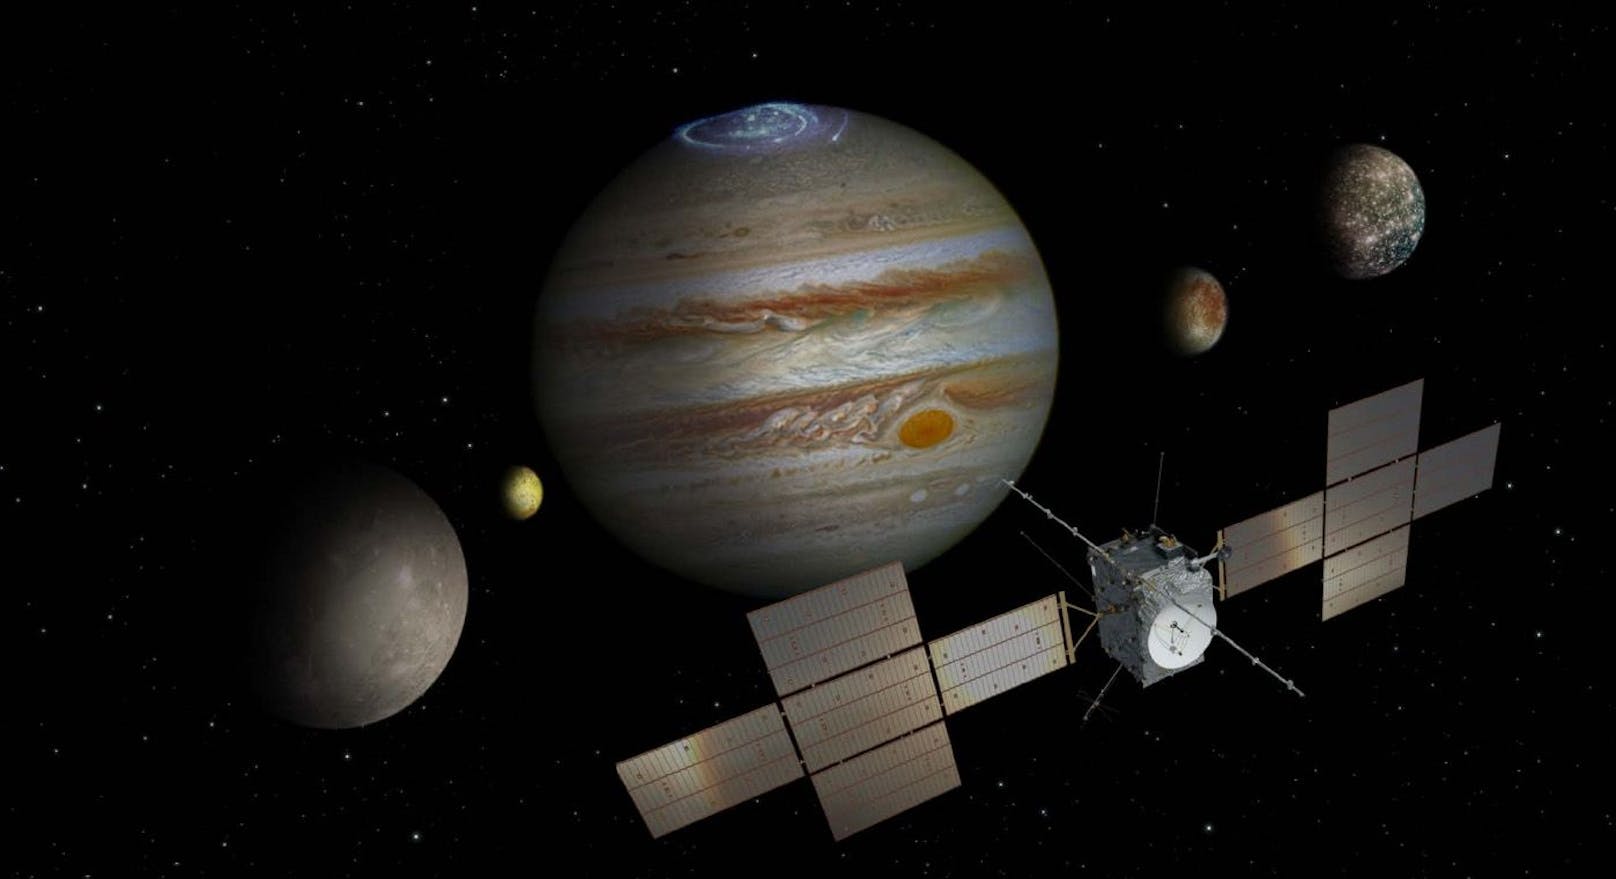 Austro-Technik soll beim Jupiter nach Leben suchen